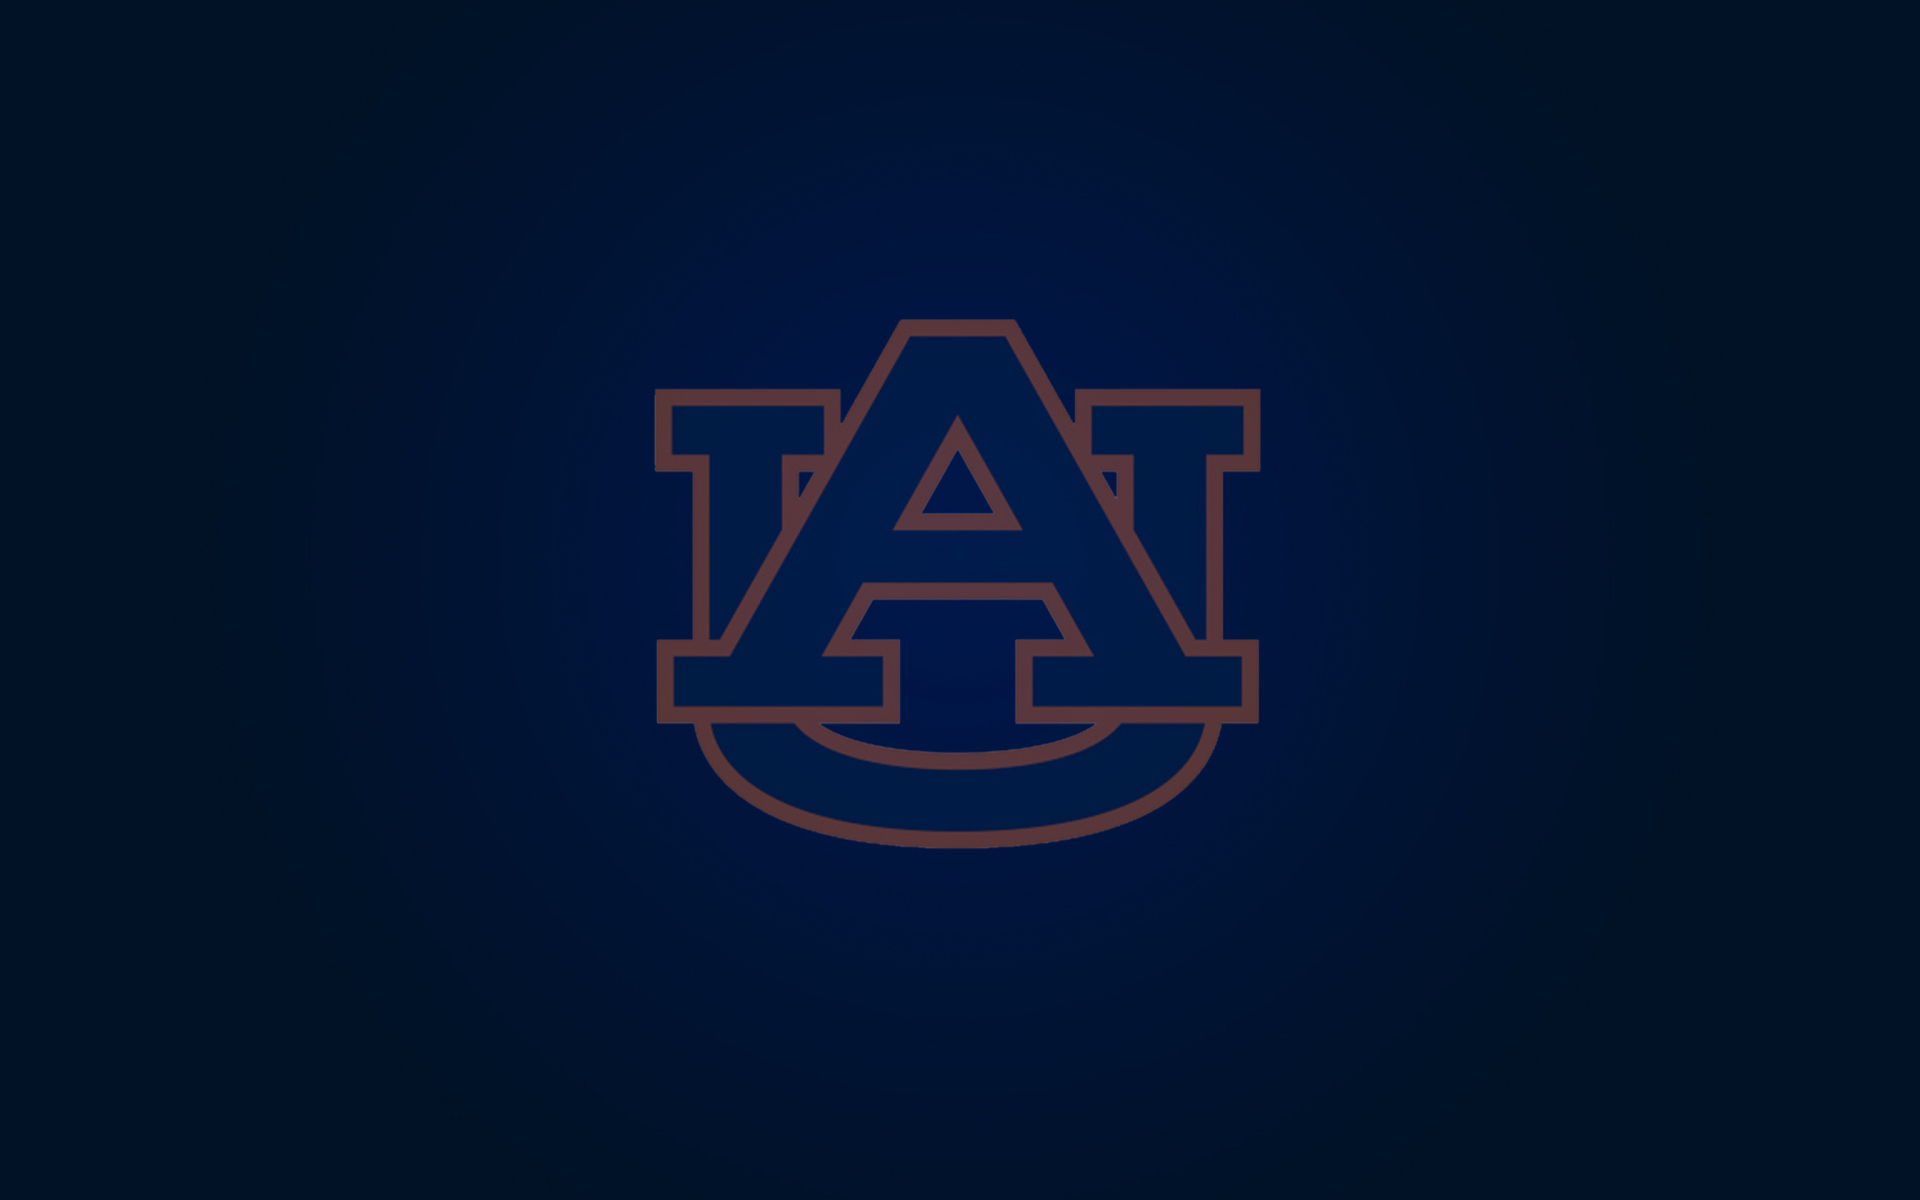 Auburn Tigers Football Wallpaper HD  PixelsTalkNet